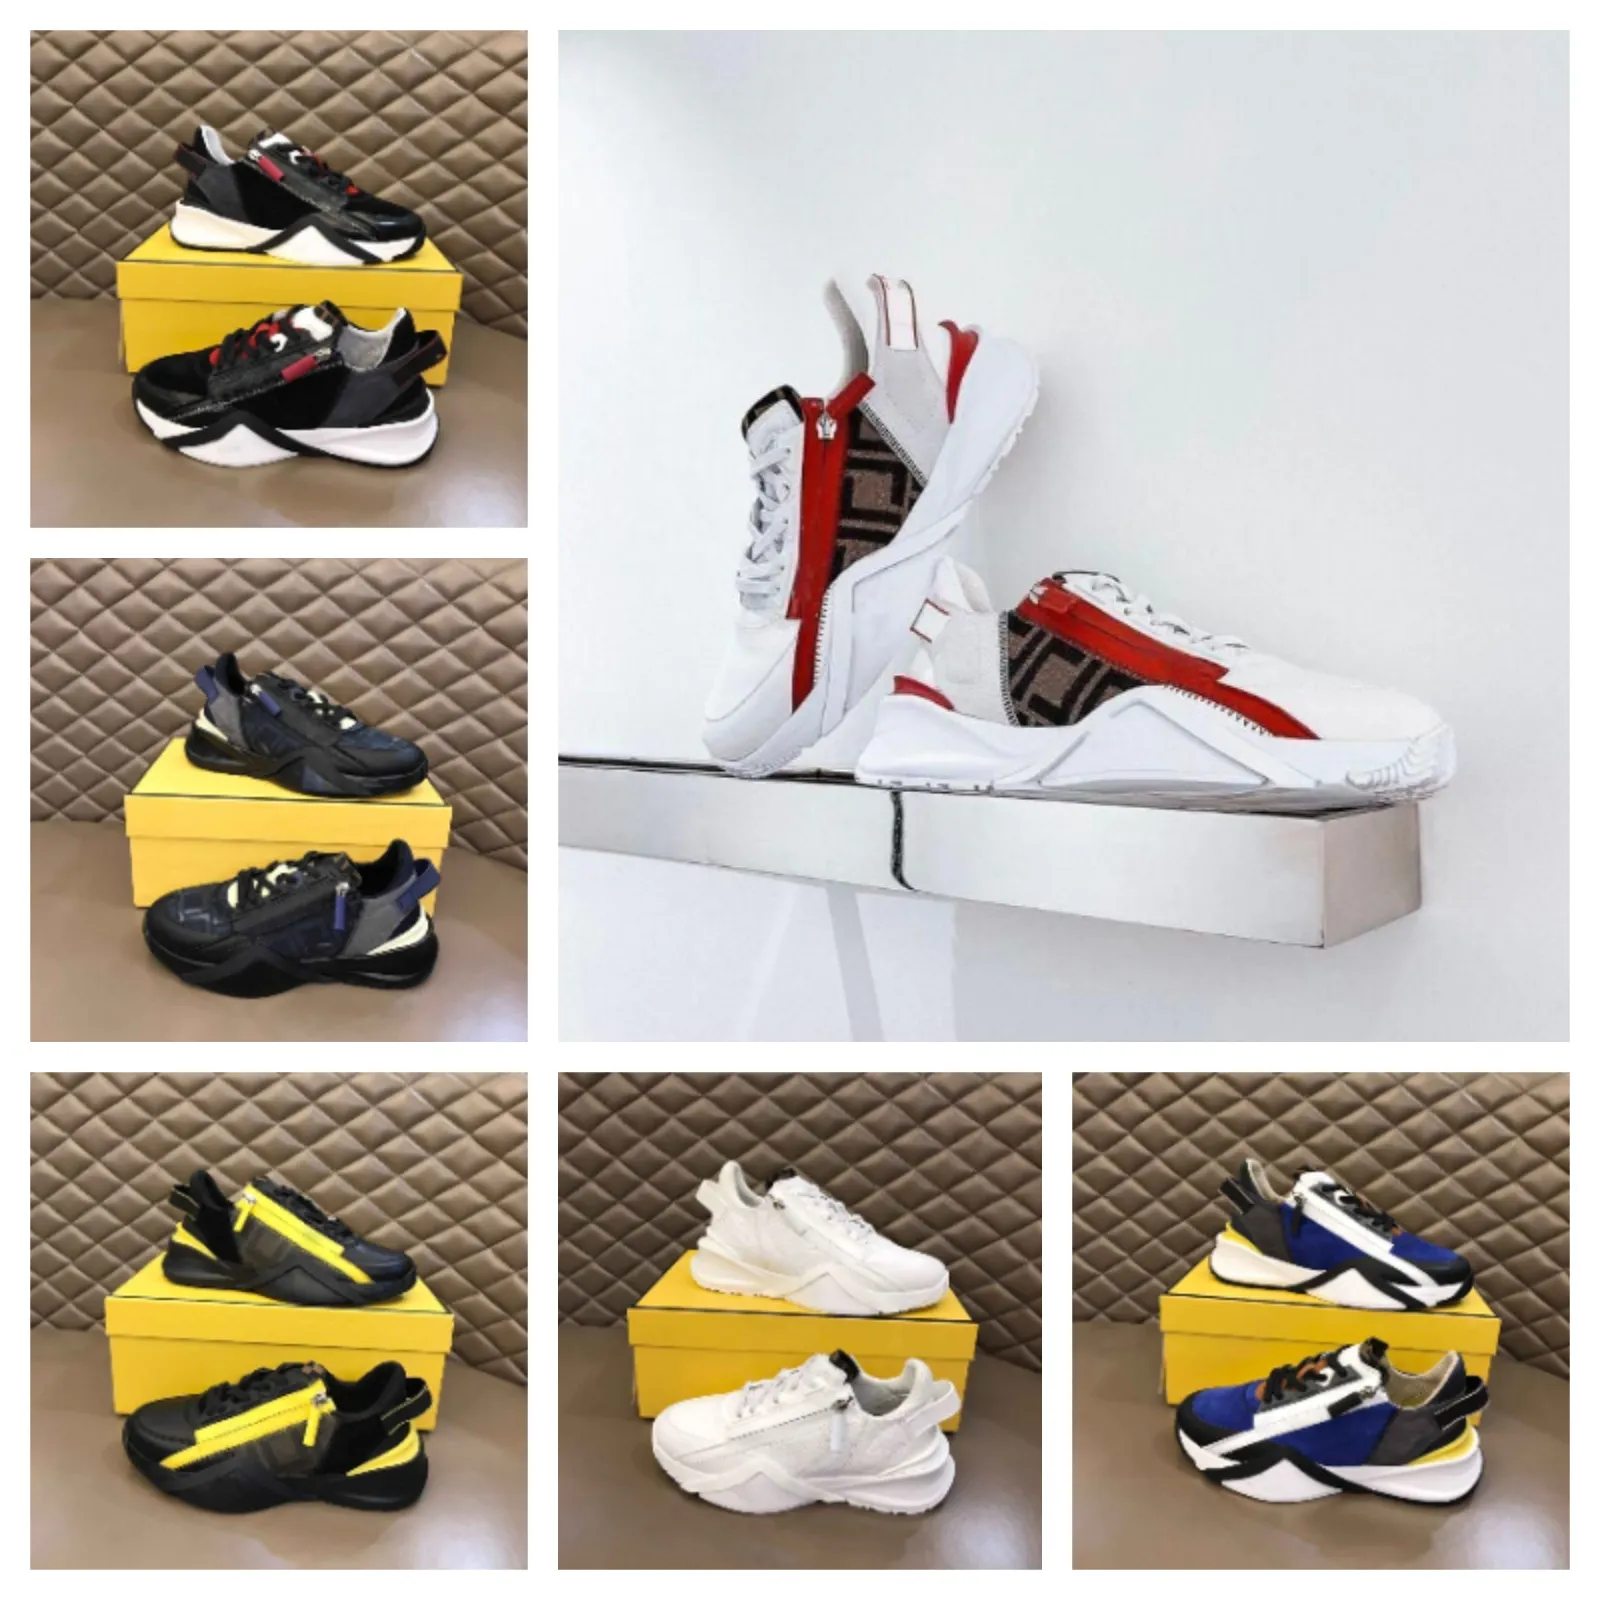 Luxury Men flujo zapatos de zapatillas perfectas comodidad para hombres casuales deportes sports malla de goma de goma corredor de patineta liviana